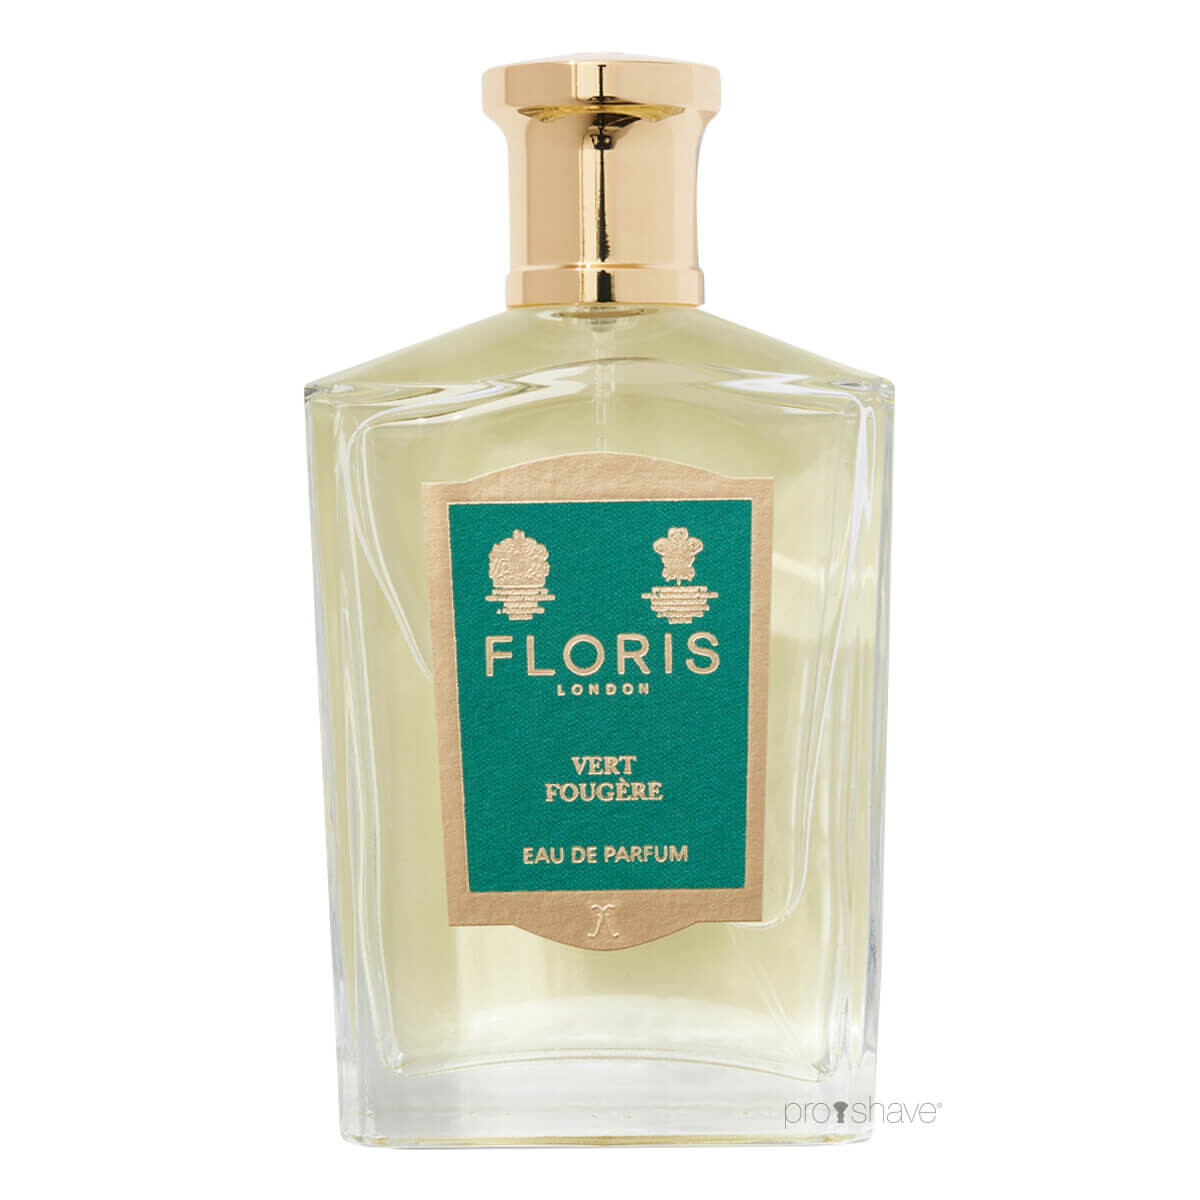 Se Floris Vert FougÃ¨re, Eau de Parfum, 100 ml. hos Proshave